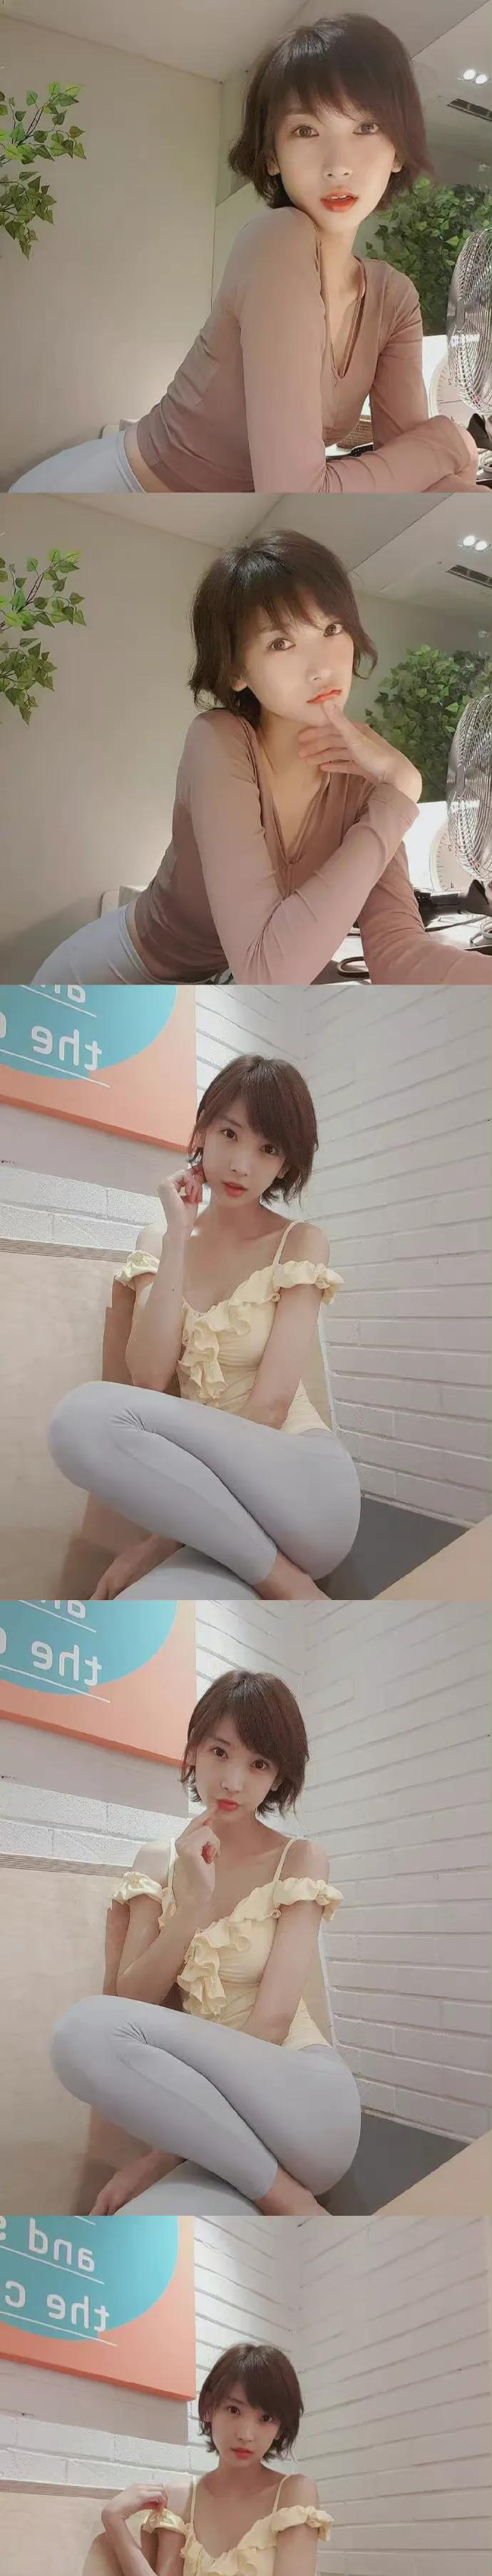 小苹果韩国版的视频在哪里:韩国女星李海仁 曾经被誉为韩国的“广末凉子”如今的境遇让人唏嘘